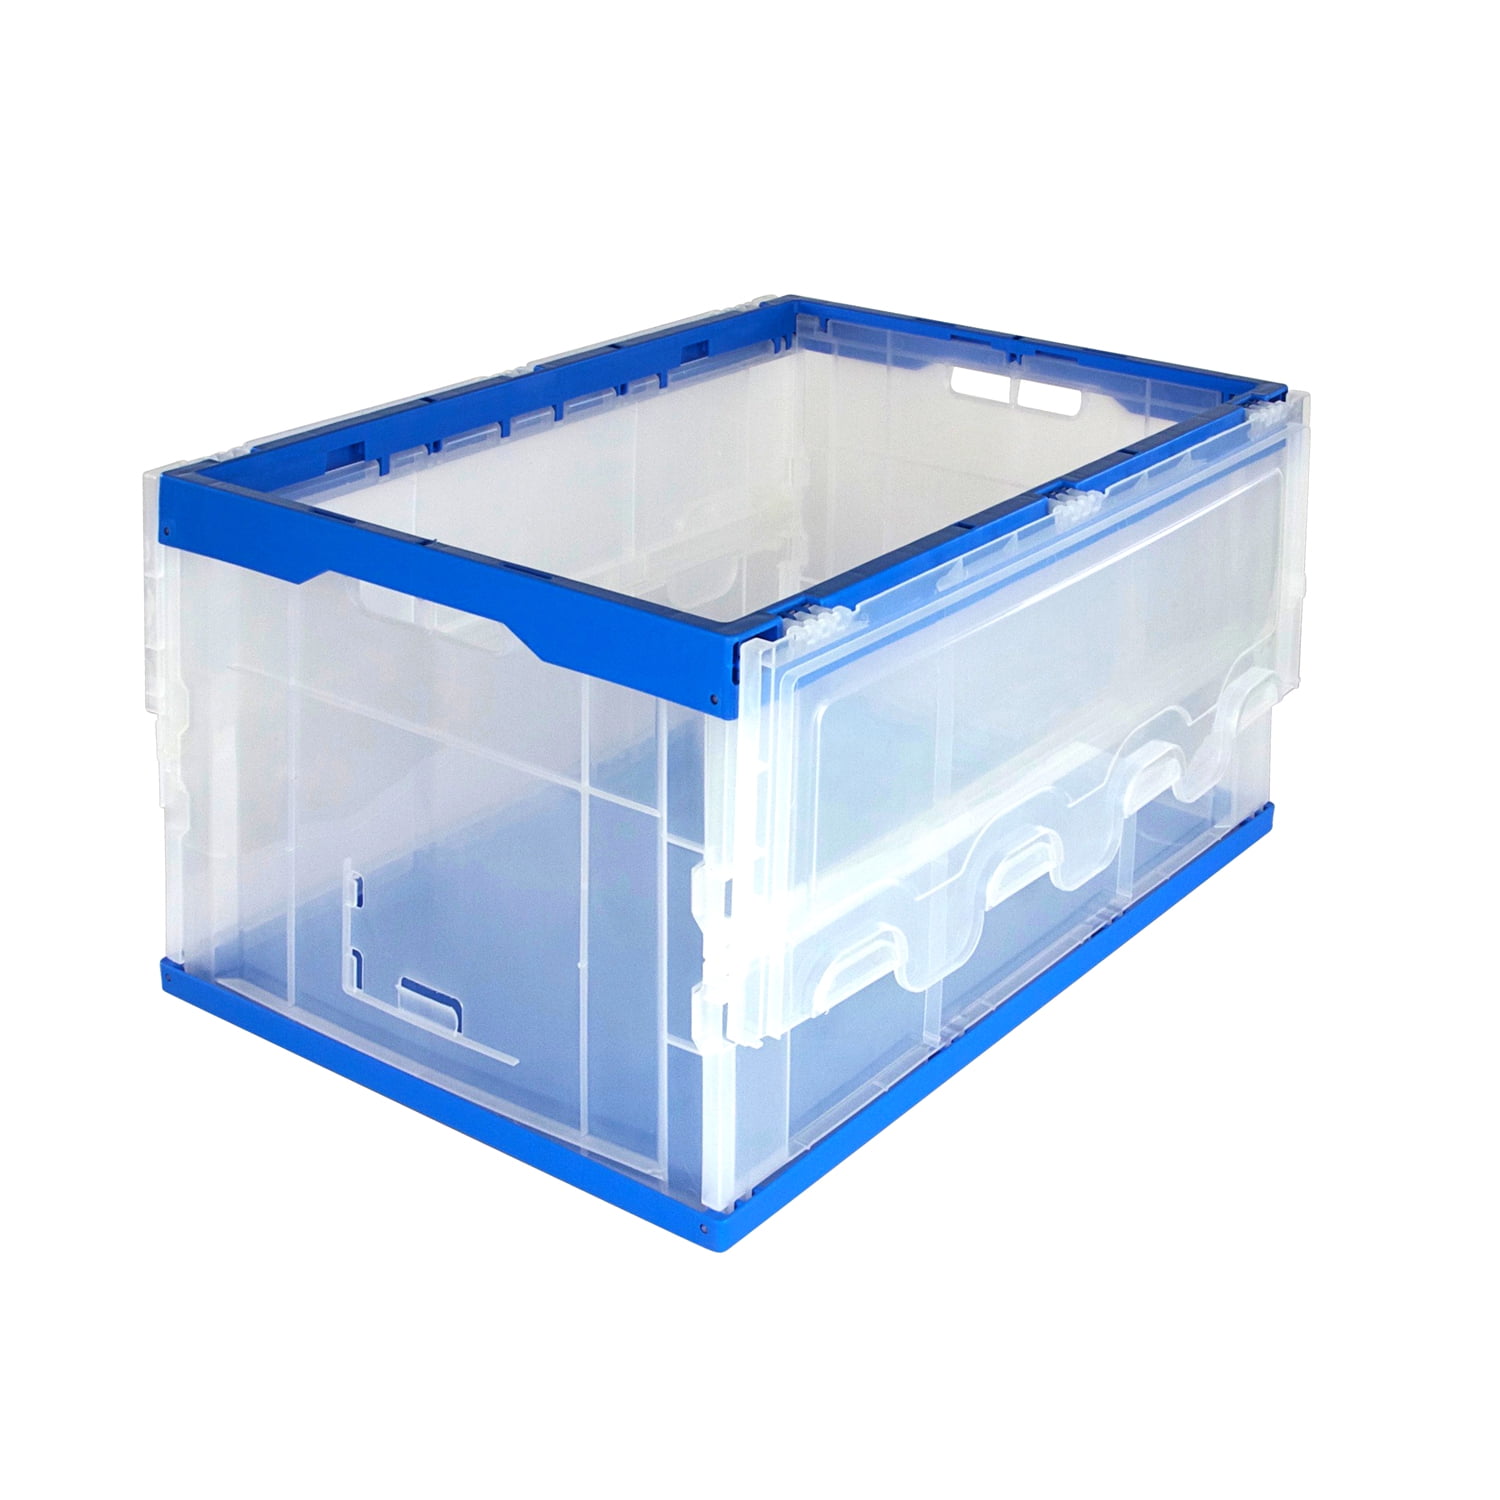  Auniwaig Multipurpose Plastic Storage Container Box